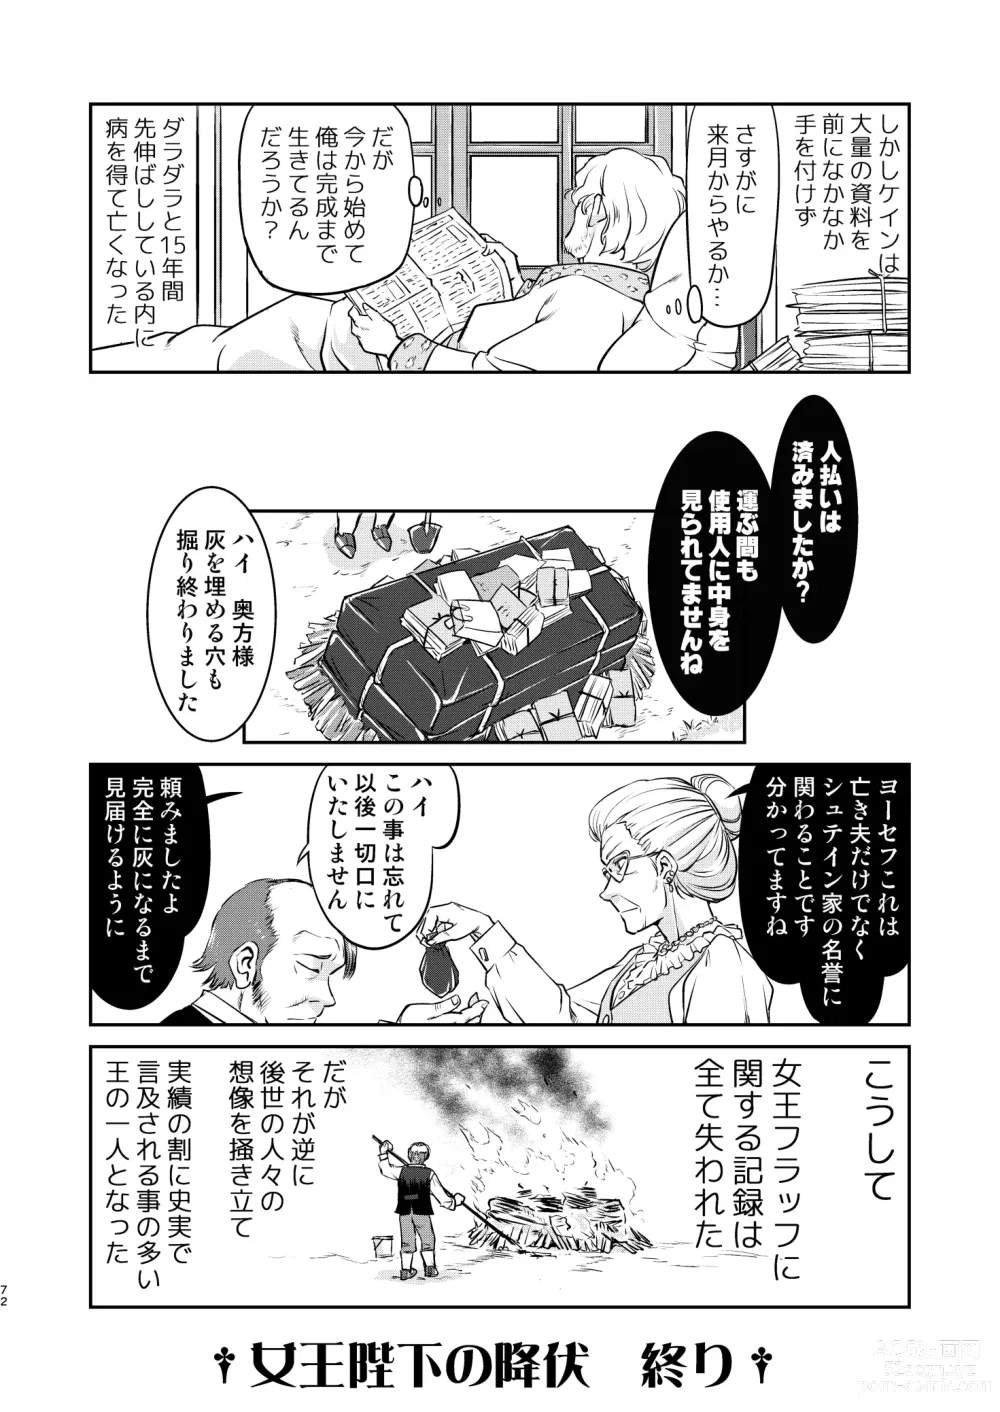 Page 72 of doujinshi Joou Heika no Koufuku Rougoku Hen